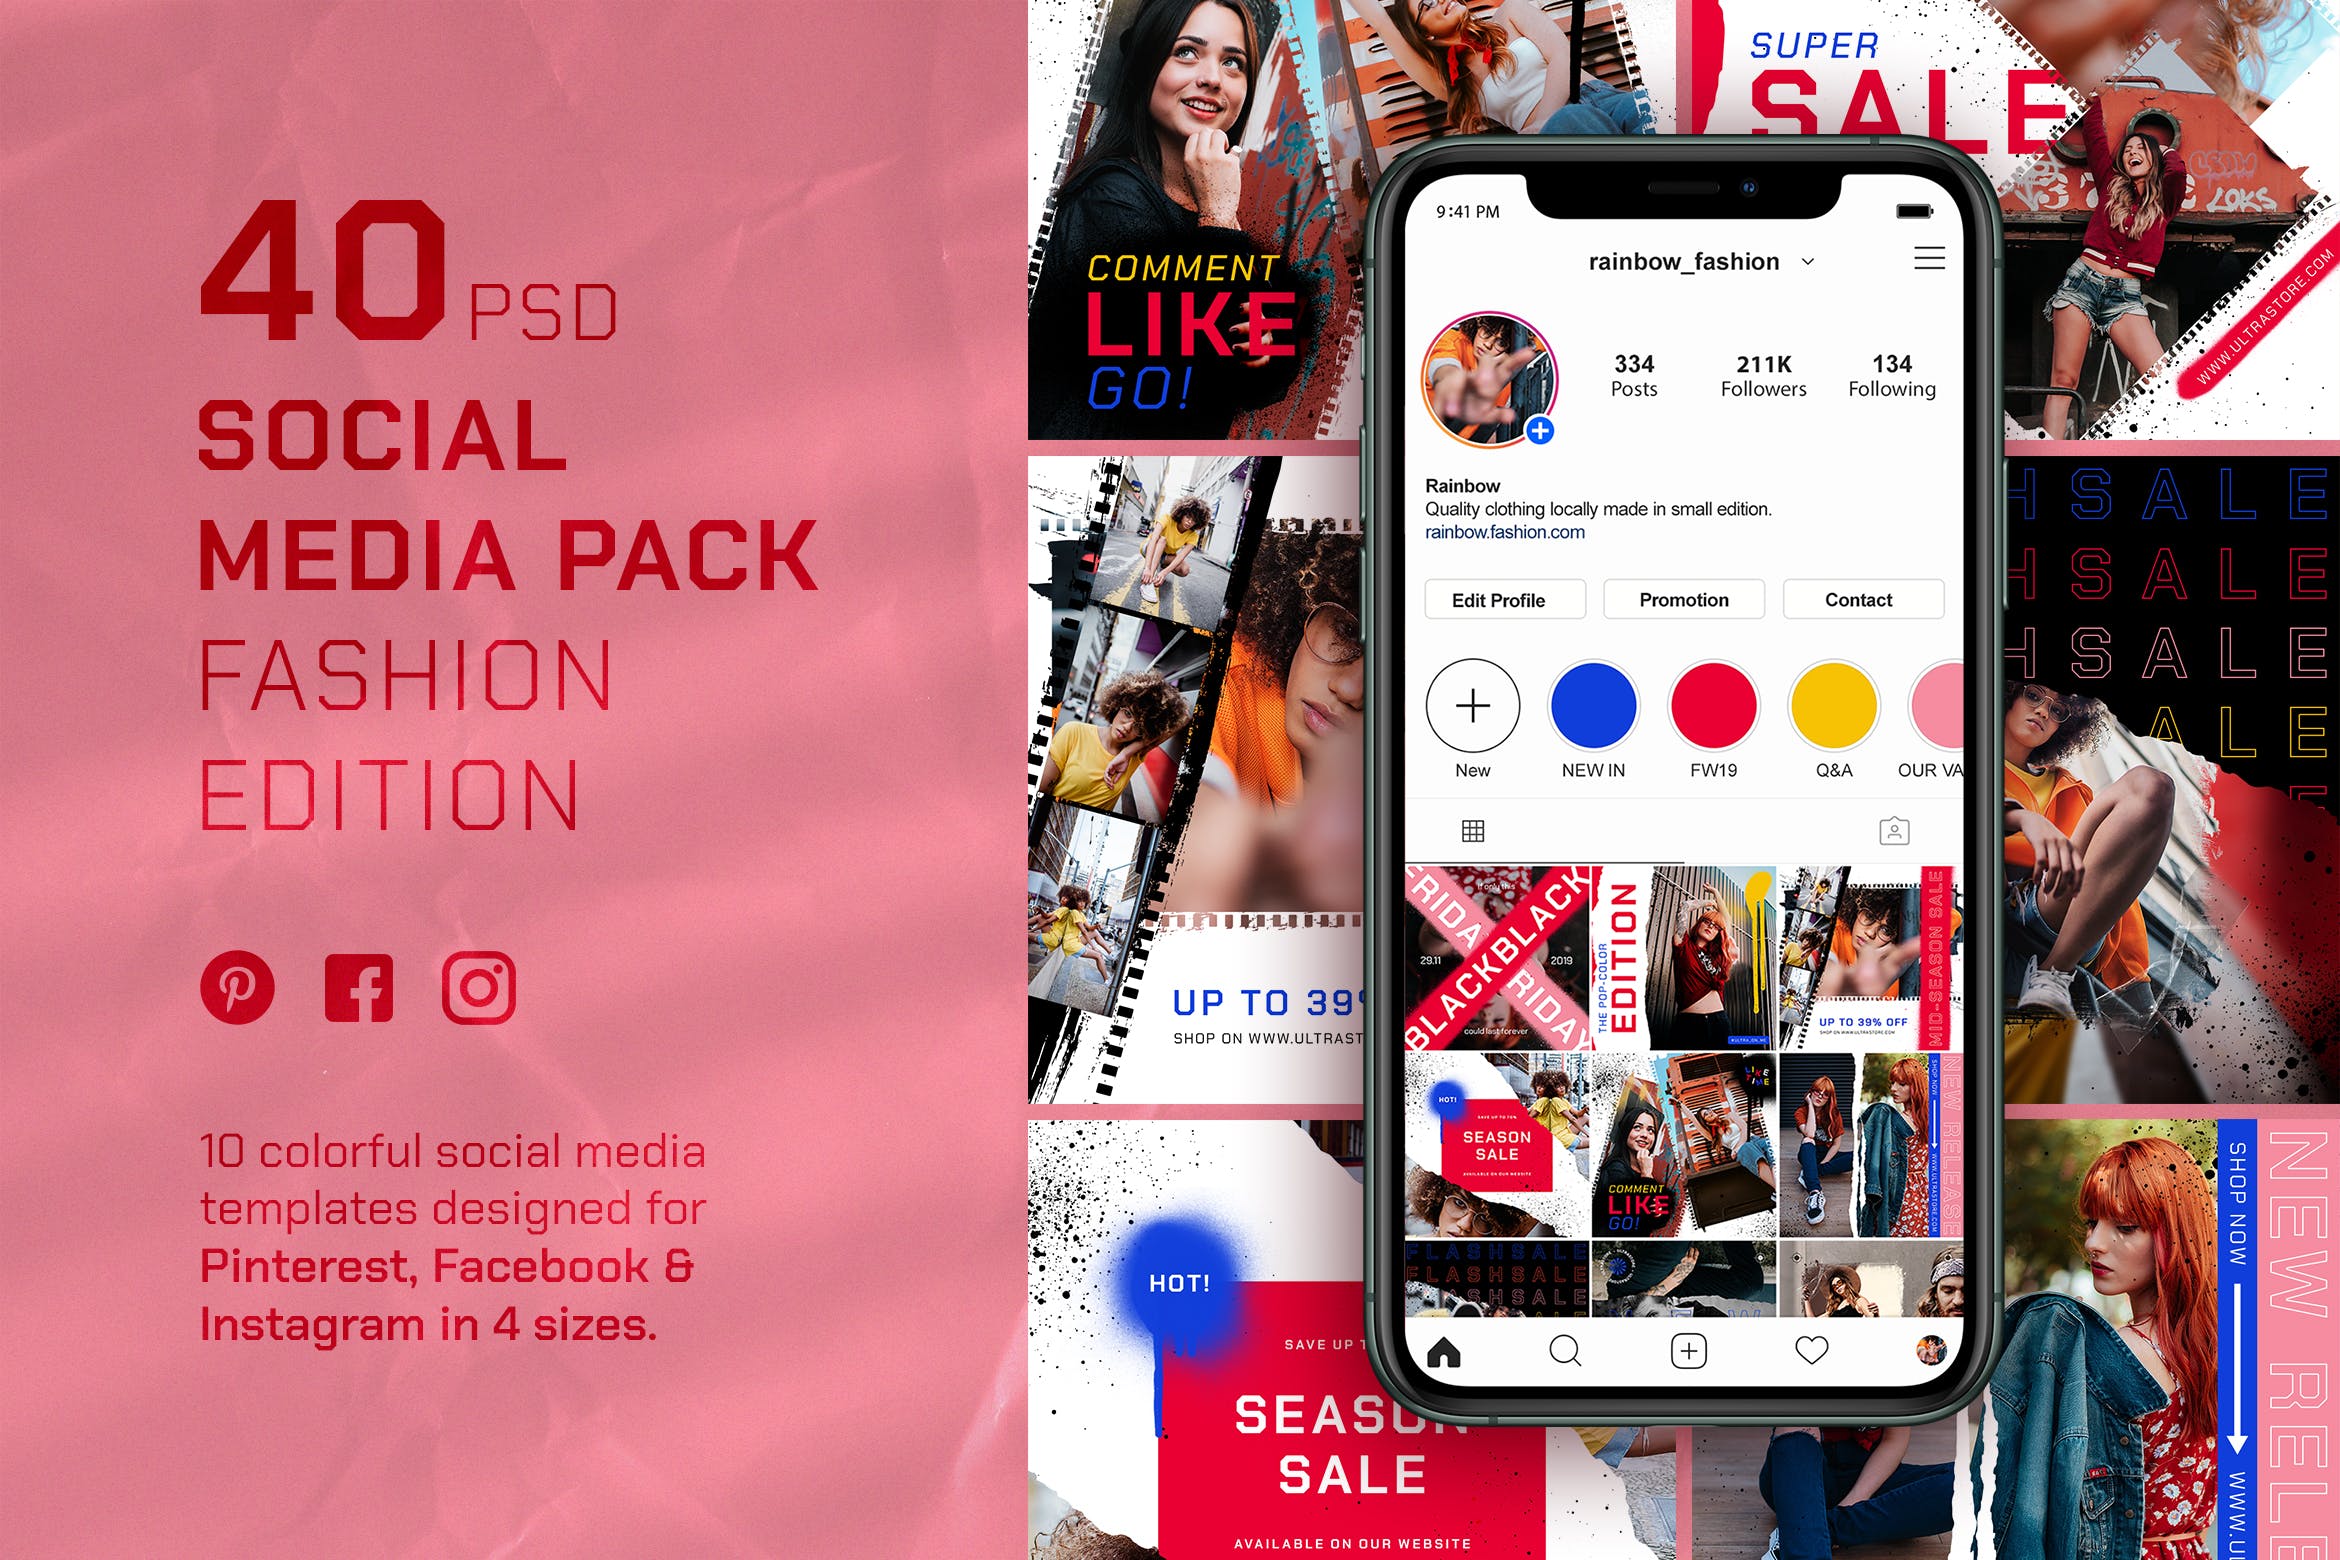 时尚商店服装品牌促销定制社交媒体素材包 Social Media Booster Pack设计素材模板